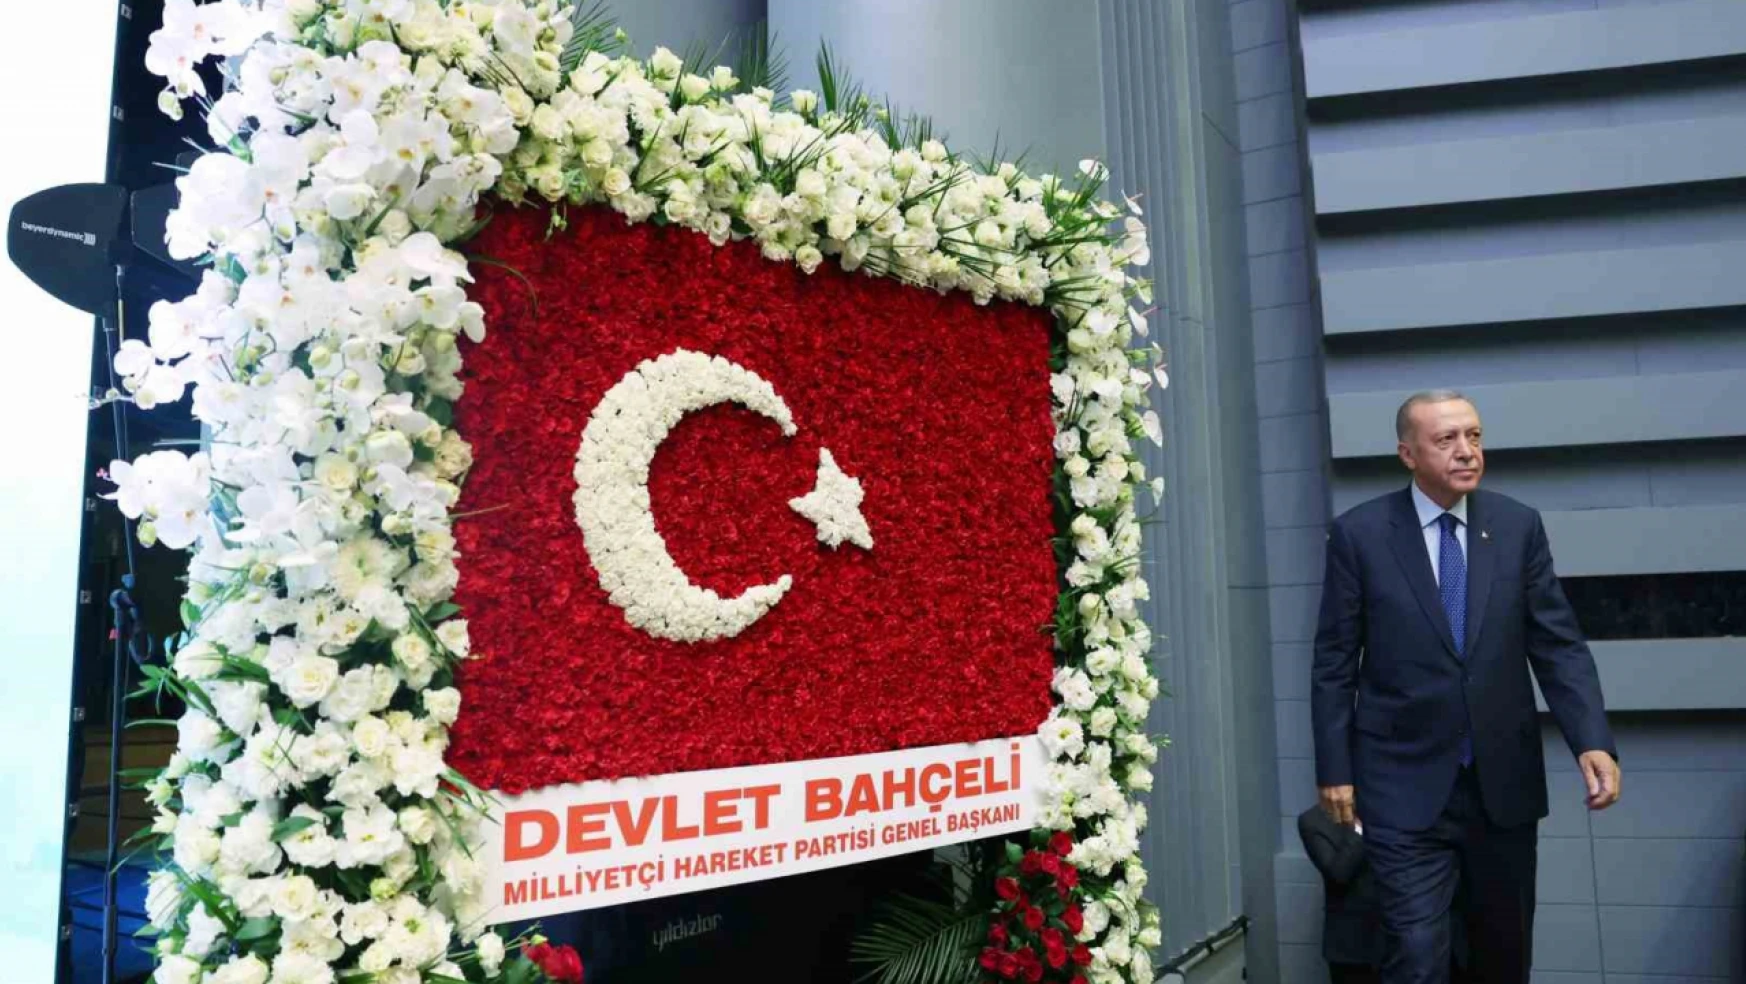 Türkiye'nin siyaset mühendisliği ürünü kurgulardan kurtulup, yerli ve milli eksende siyaset yapan bir muhalefete kavuşması en büyük dileğimizdir